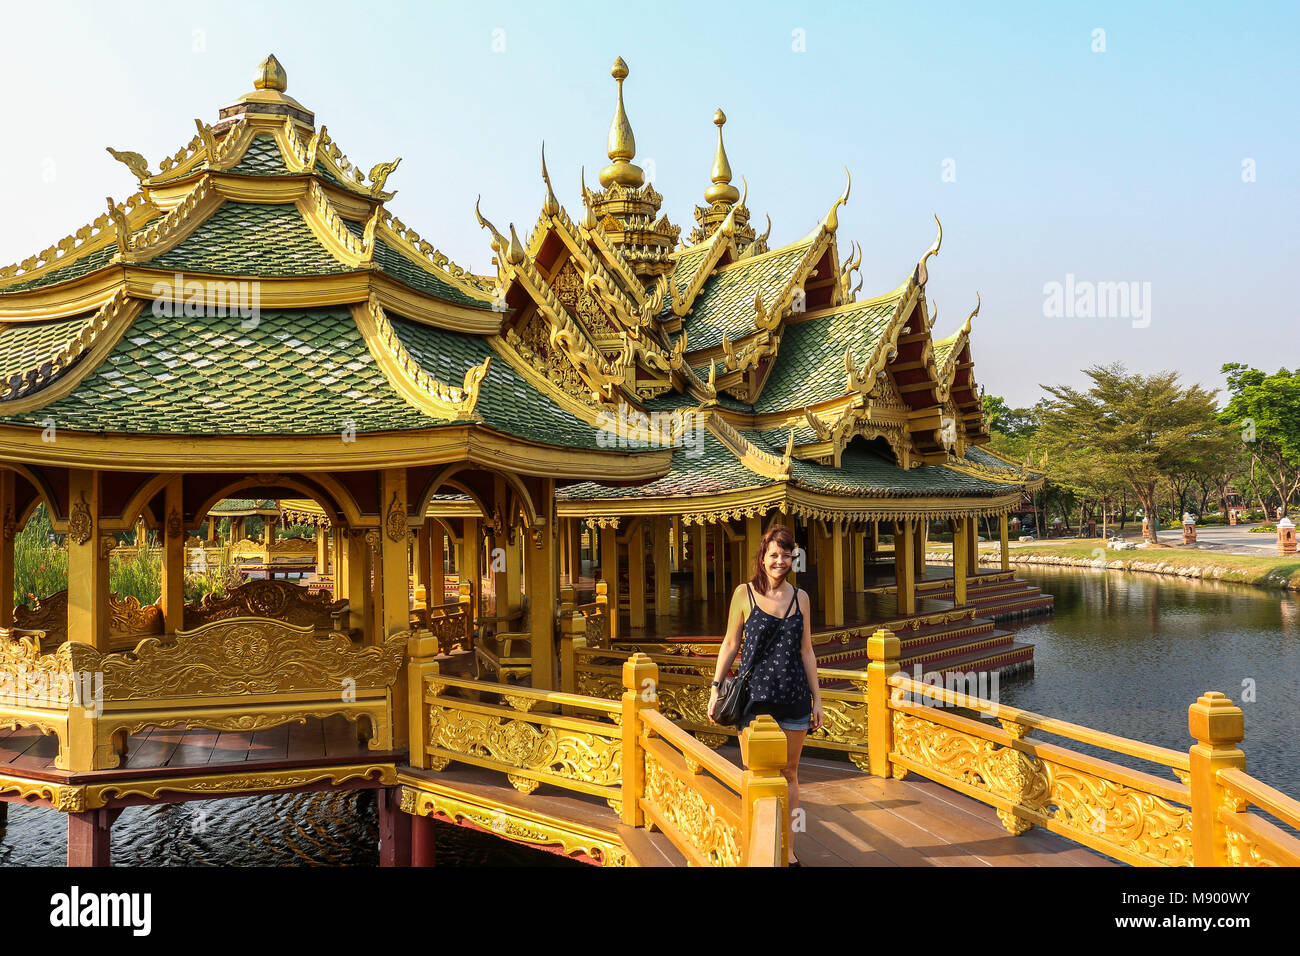 Tempio thailandese su acqua in città antica vicino a Bangkok, in Thailandia Foto Stock